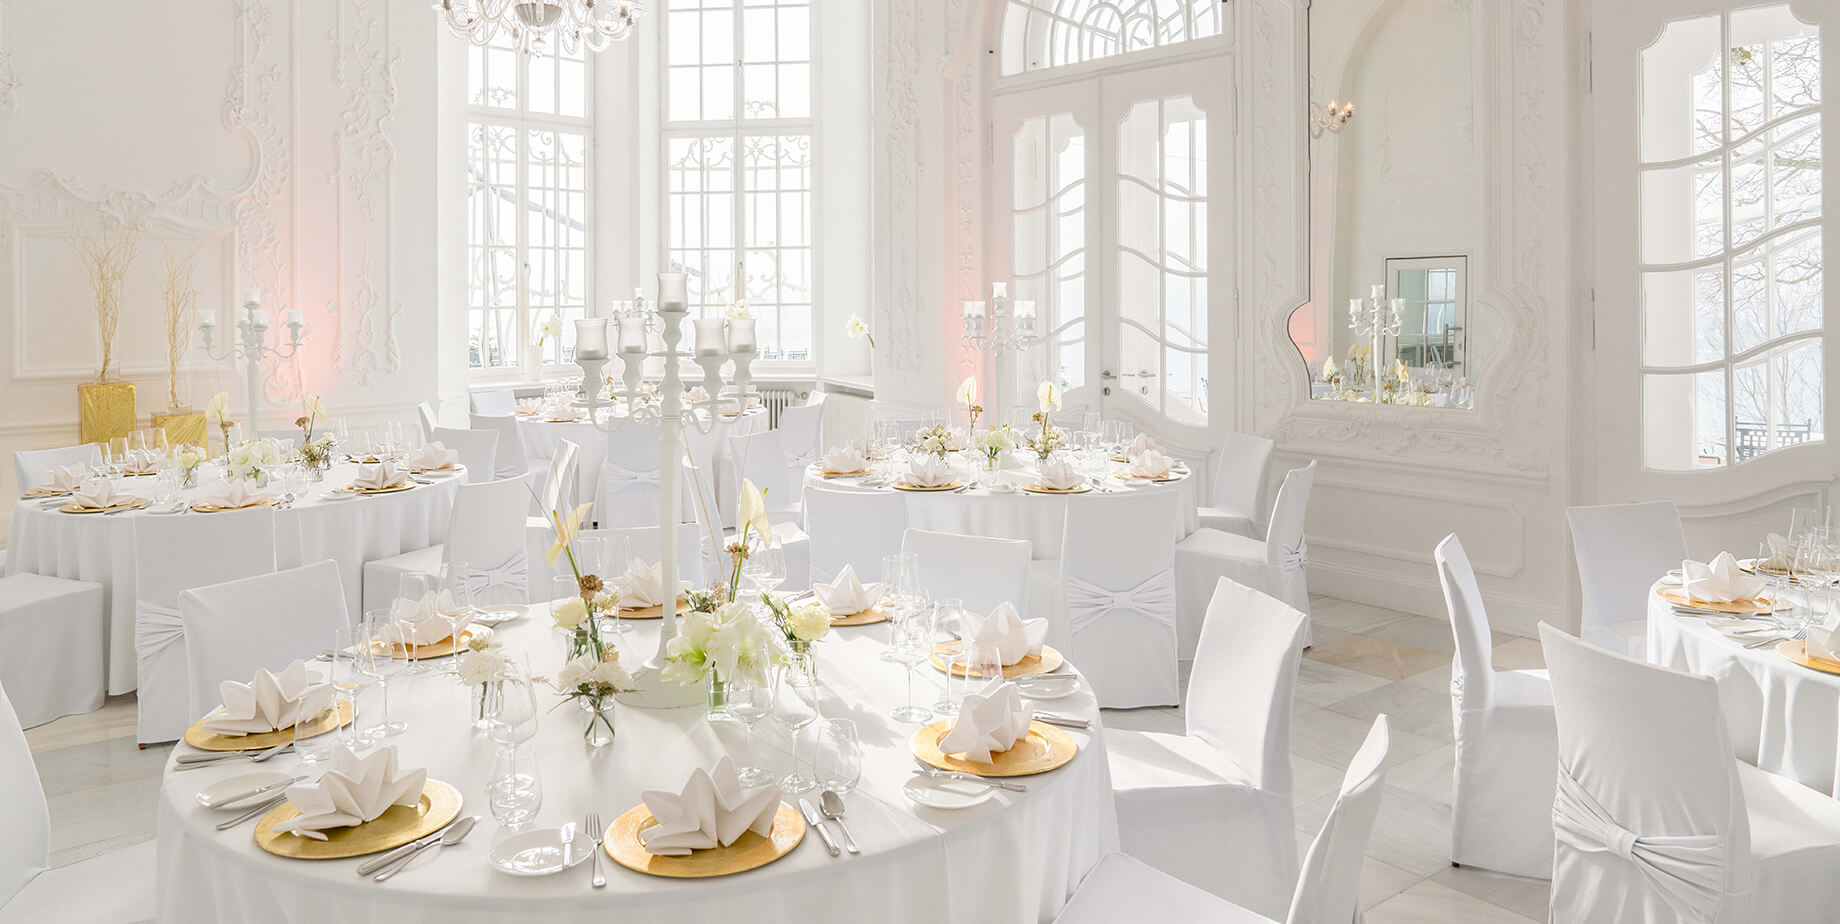 Aufnahme eines Festsaals mit hohen Wänden und Bogenfenstern in der Hochzeitslocation am Tegernsee mit mehreren in weiß und Gold eingedeckten Rundtischen und Stühlen mit weißen Stuhlhussen.